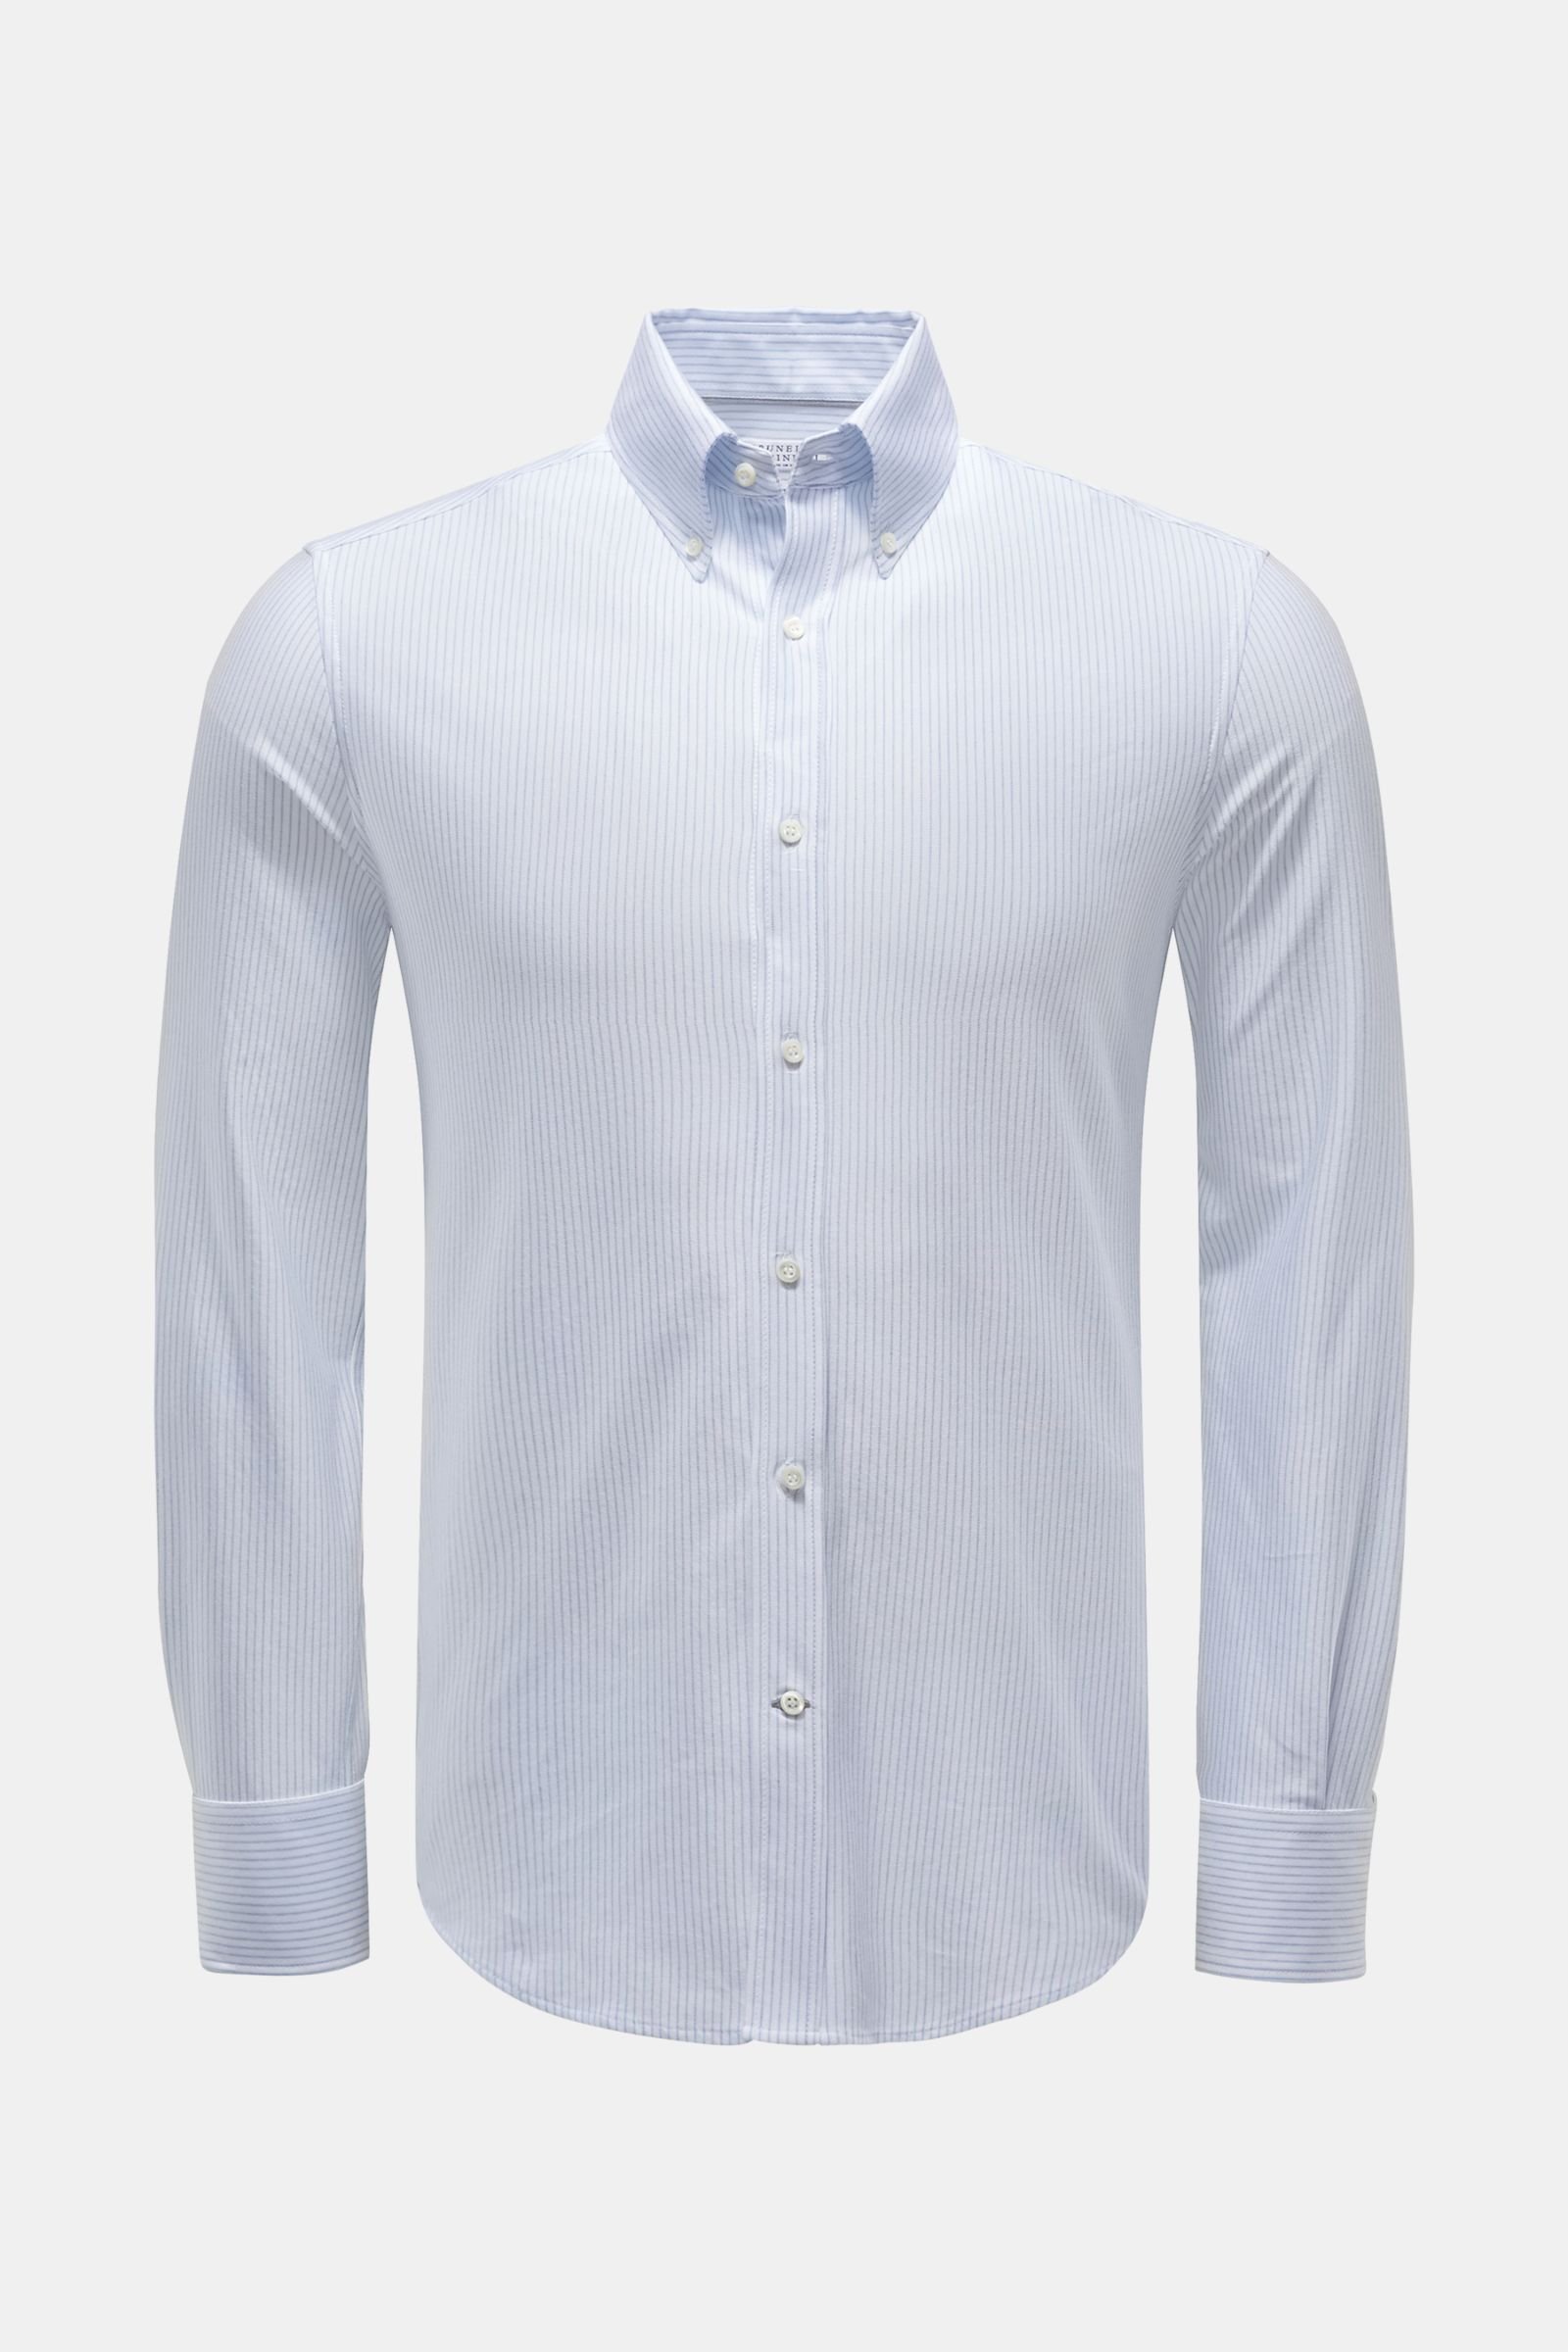 Jersey-Hemd Button-Down-Kragen weiß/blau gestreift